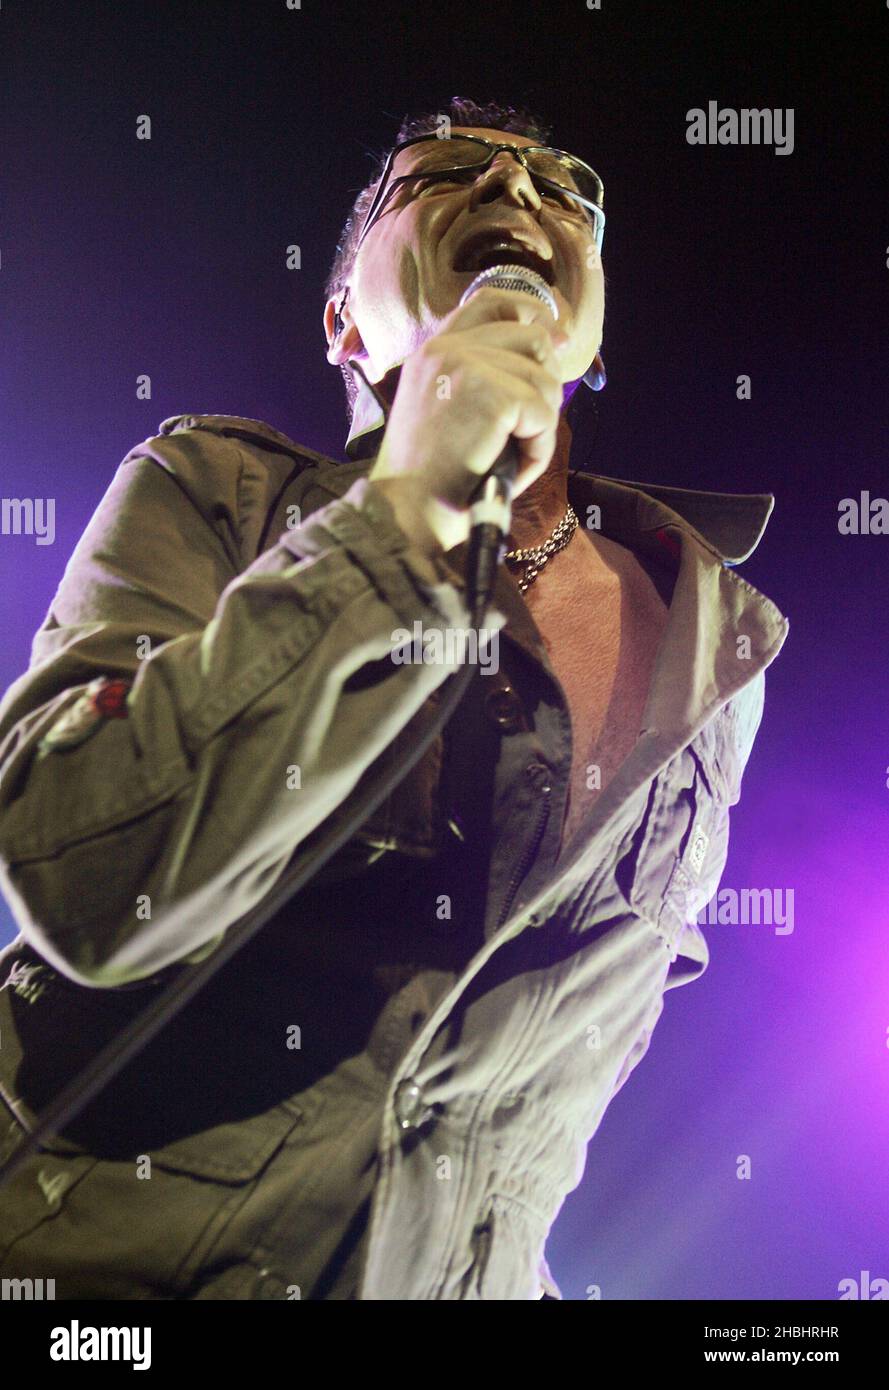 Jim Kerr del gruppo pop-rock scozzese Simple Minds esibisce dal vivo sul palco il loro ultimo album "Black & White 050505" all'Astoria il 13 febbraio 2006 a Londra. Foto Stock